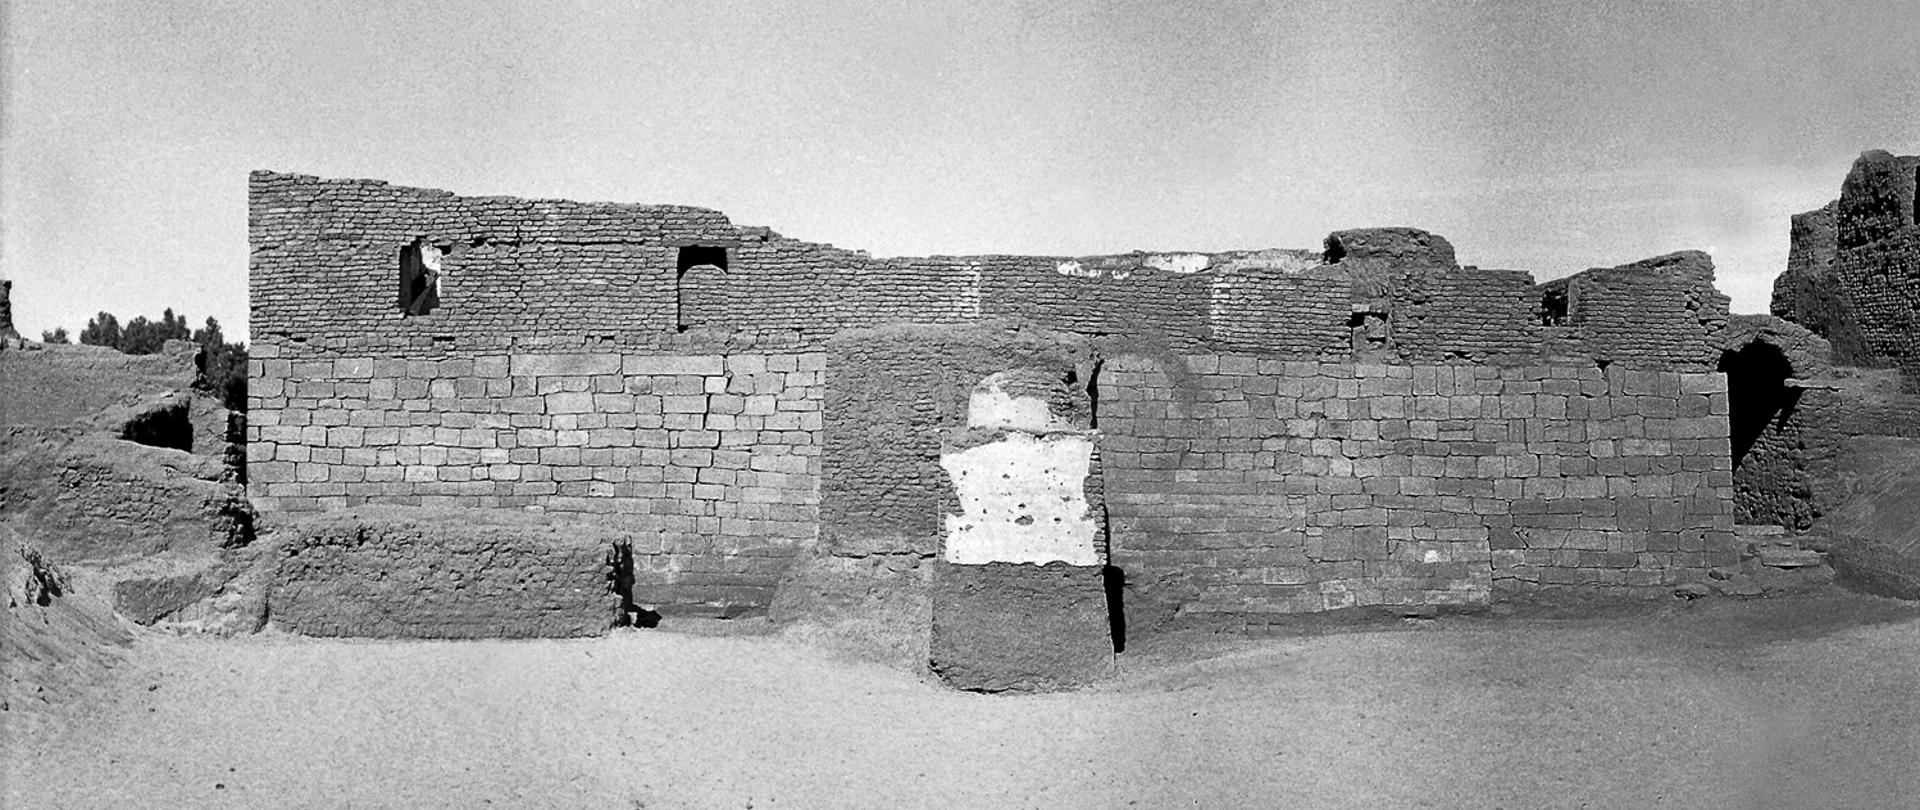 3.Katedra w Faras, początek prac archeologicznych: lata 1961-62